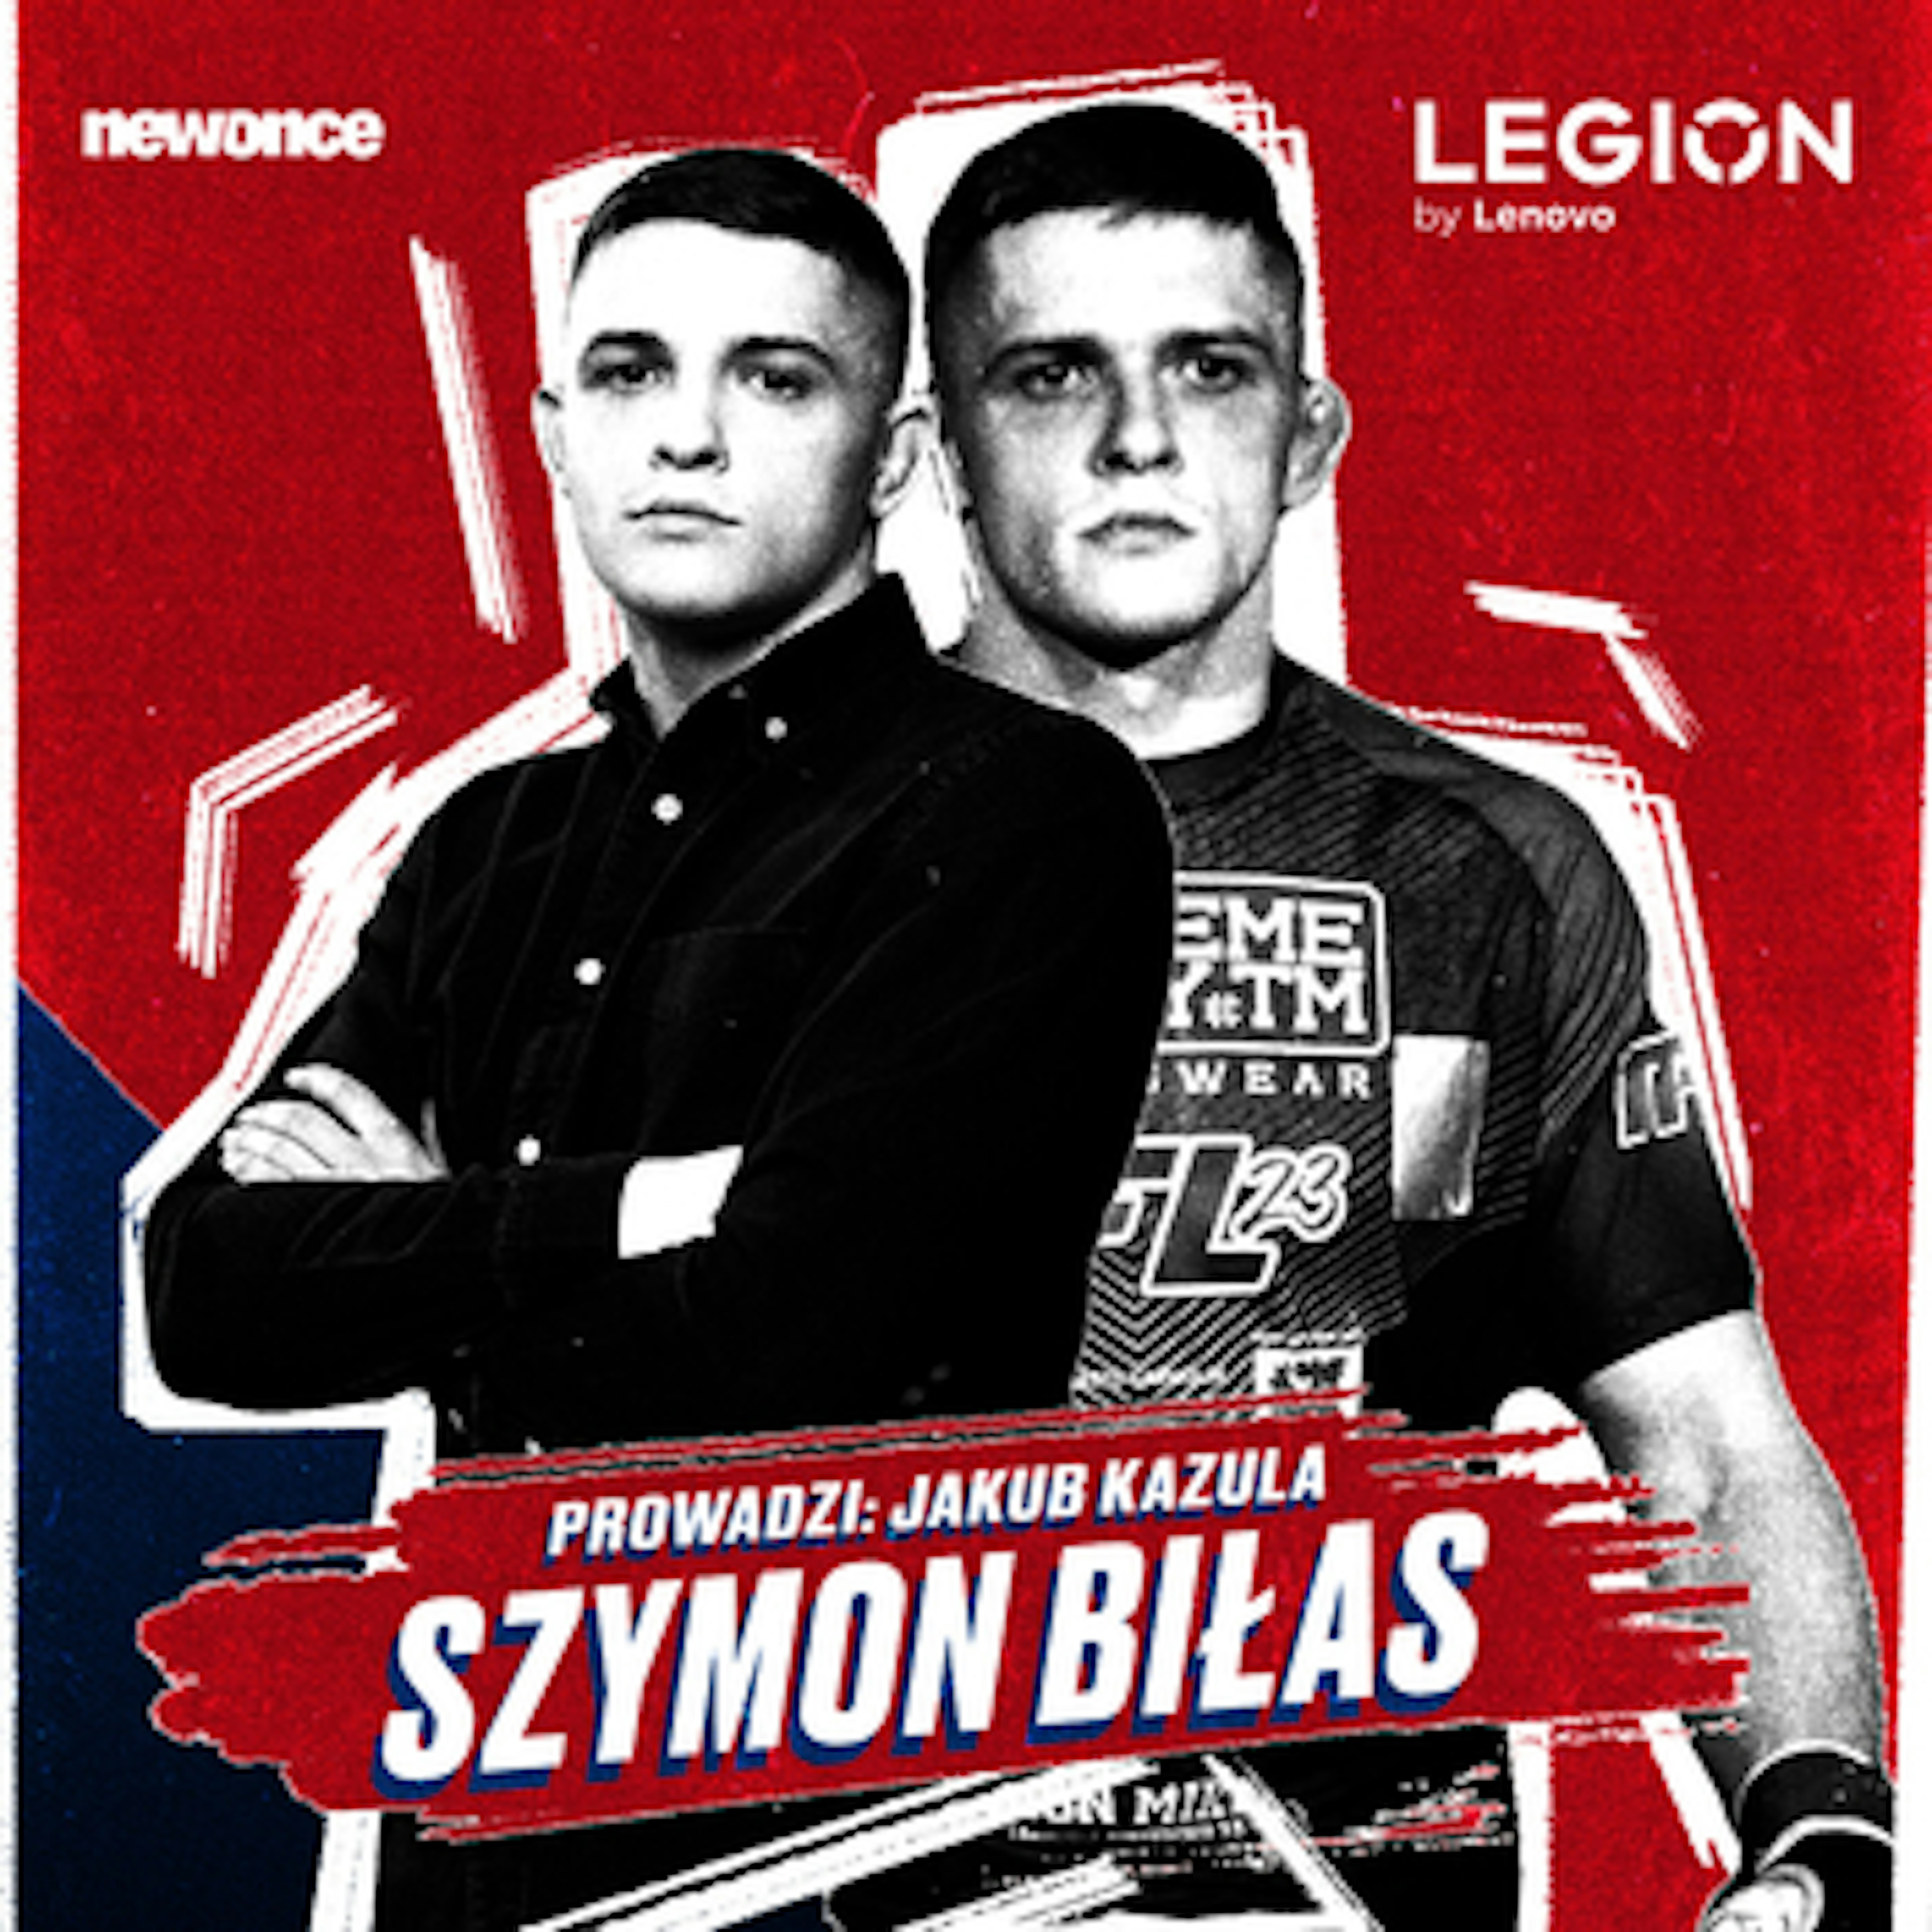 newonce.sport specials - Pomiędzy gamingiem a MMA. Szymon Biłas (Lenovo)